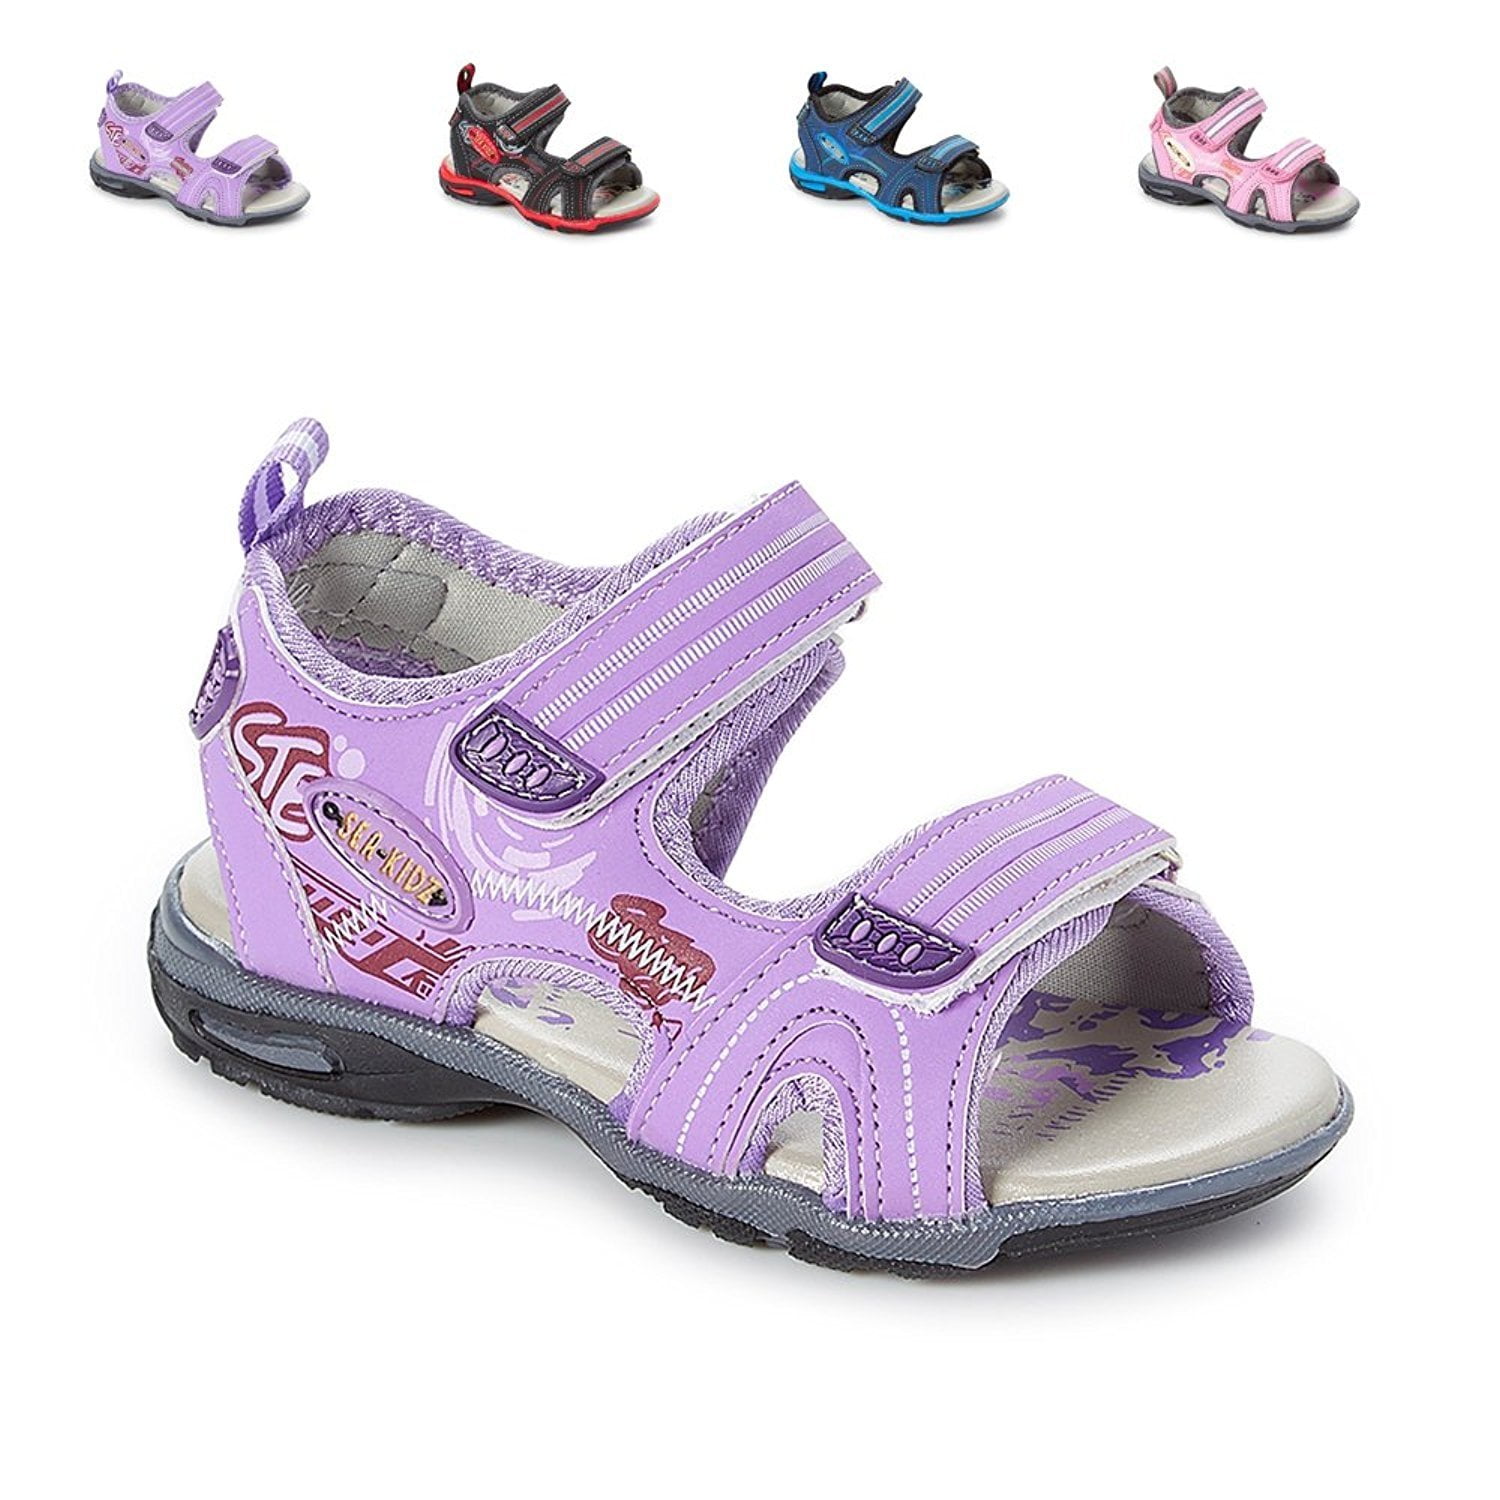 Sanalve Sport Summer Walking Little Boys Girls Toddler Sandals